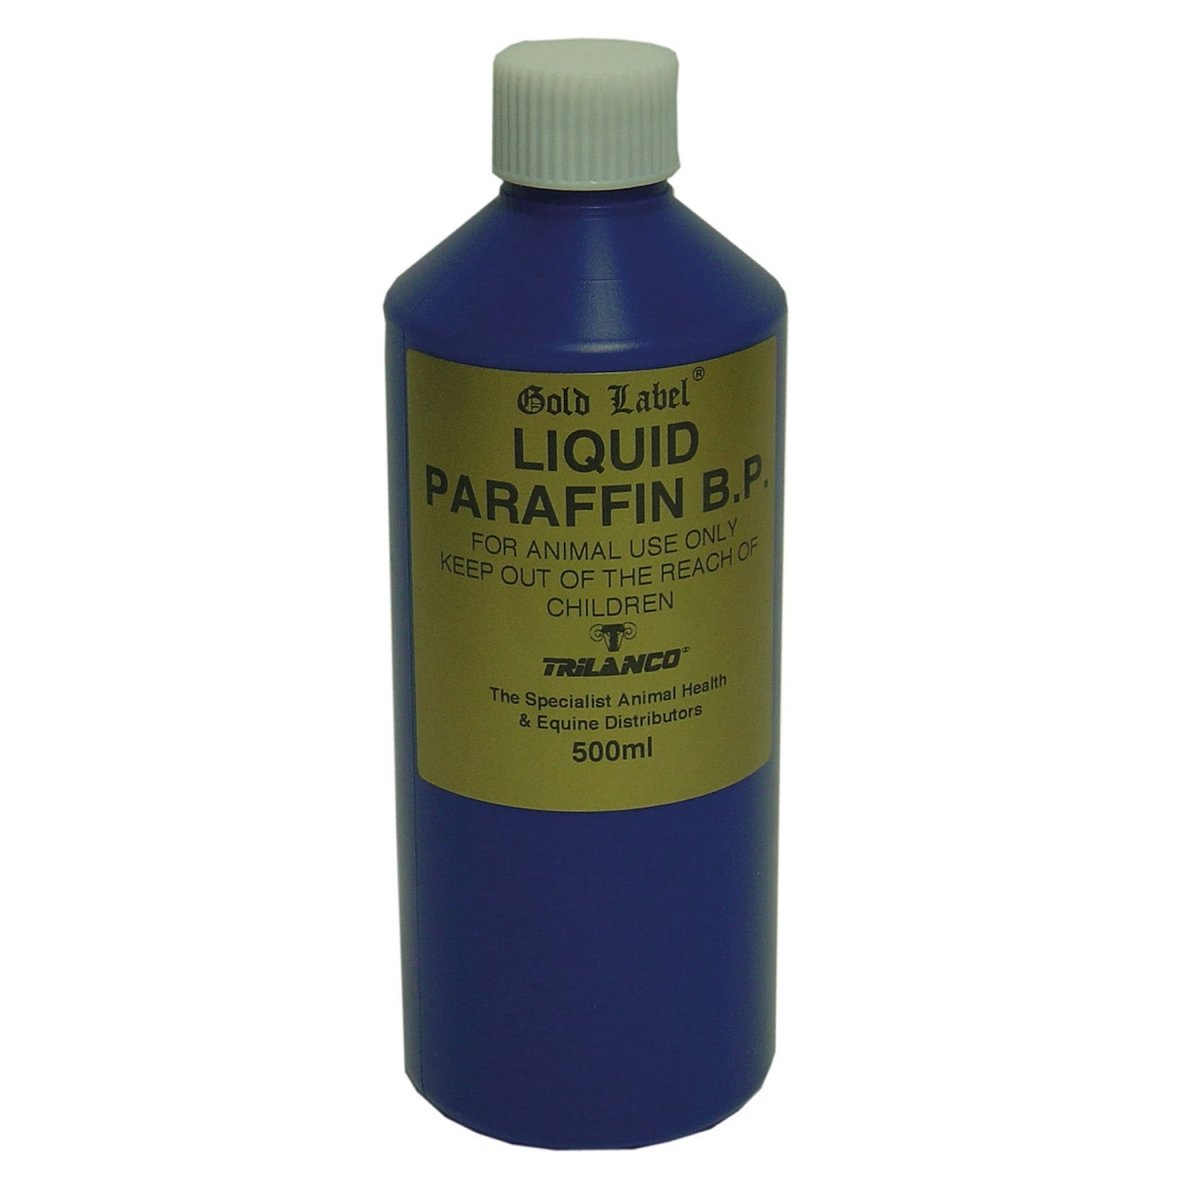 Gold Label Liquid Paraffin B.P. - 500Ml -